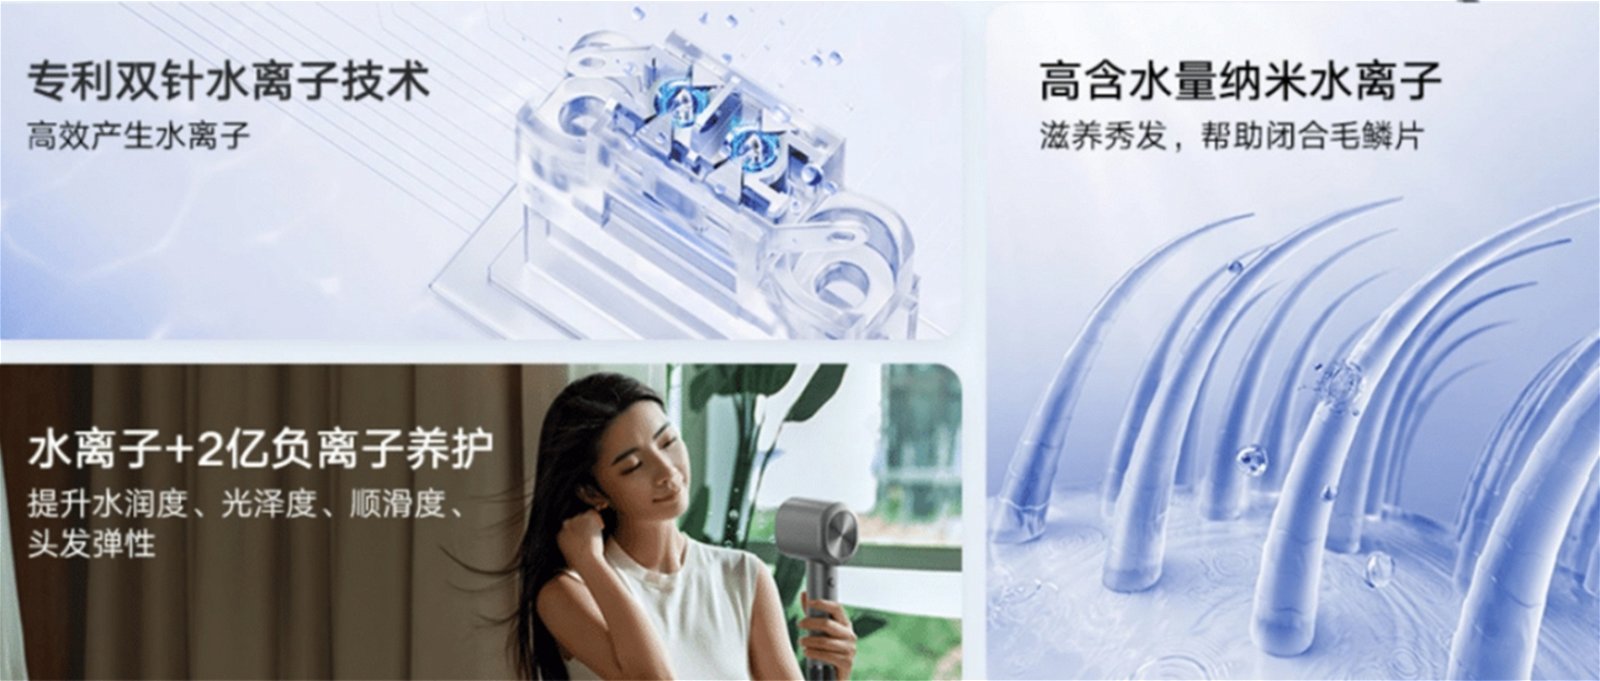 Xiaomi lanza un nuevo secador de pelo: estilo Dyson pero 8 veces más barato